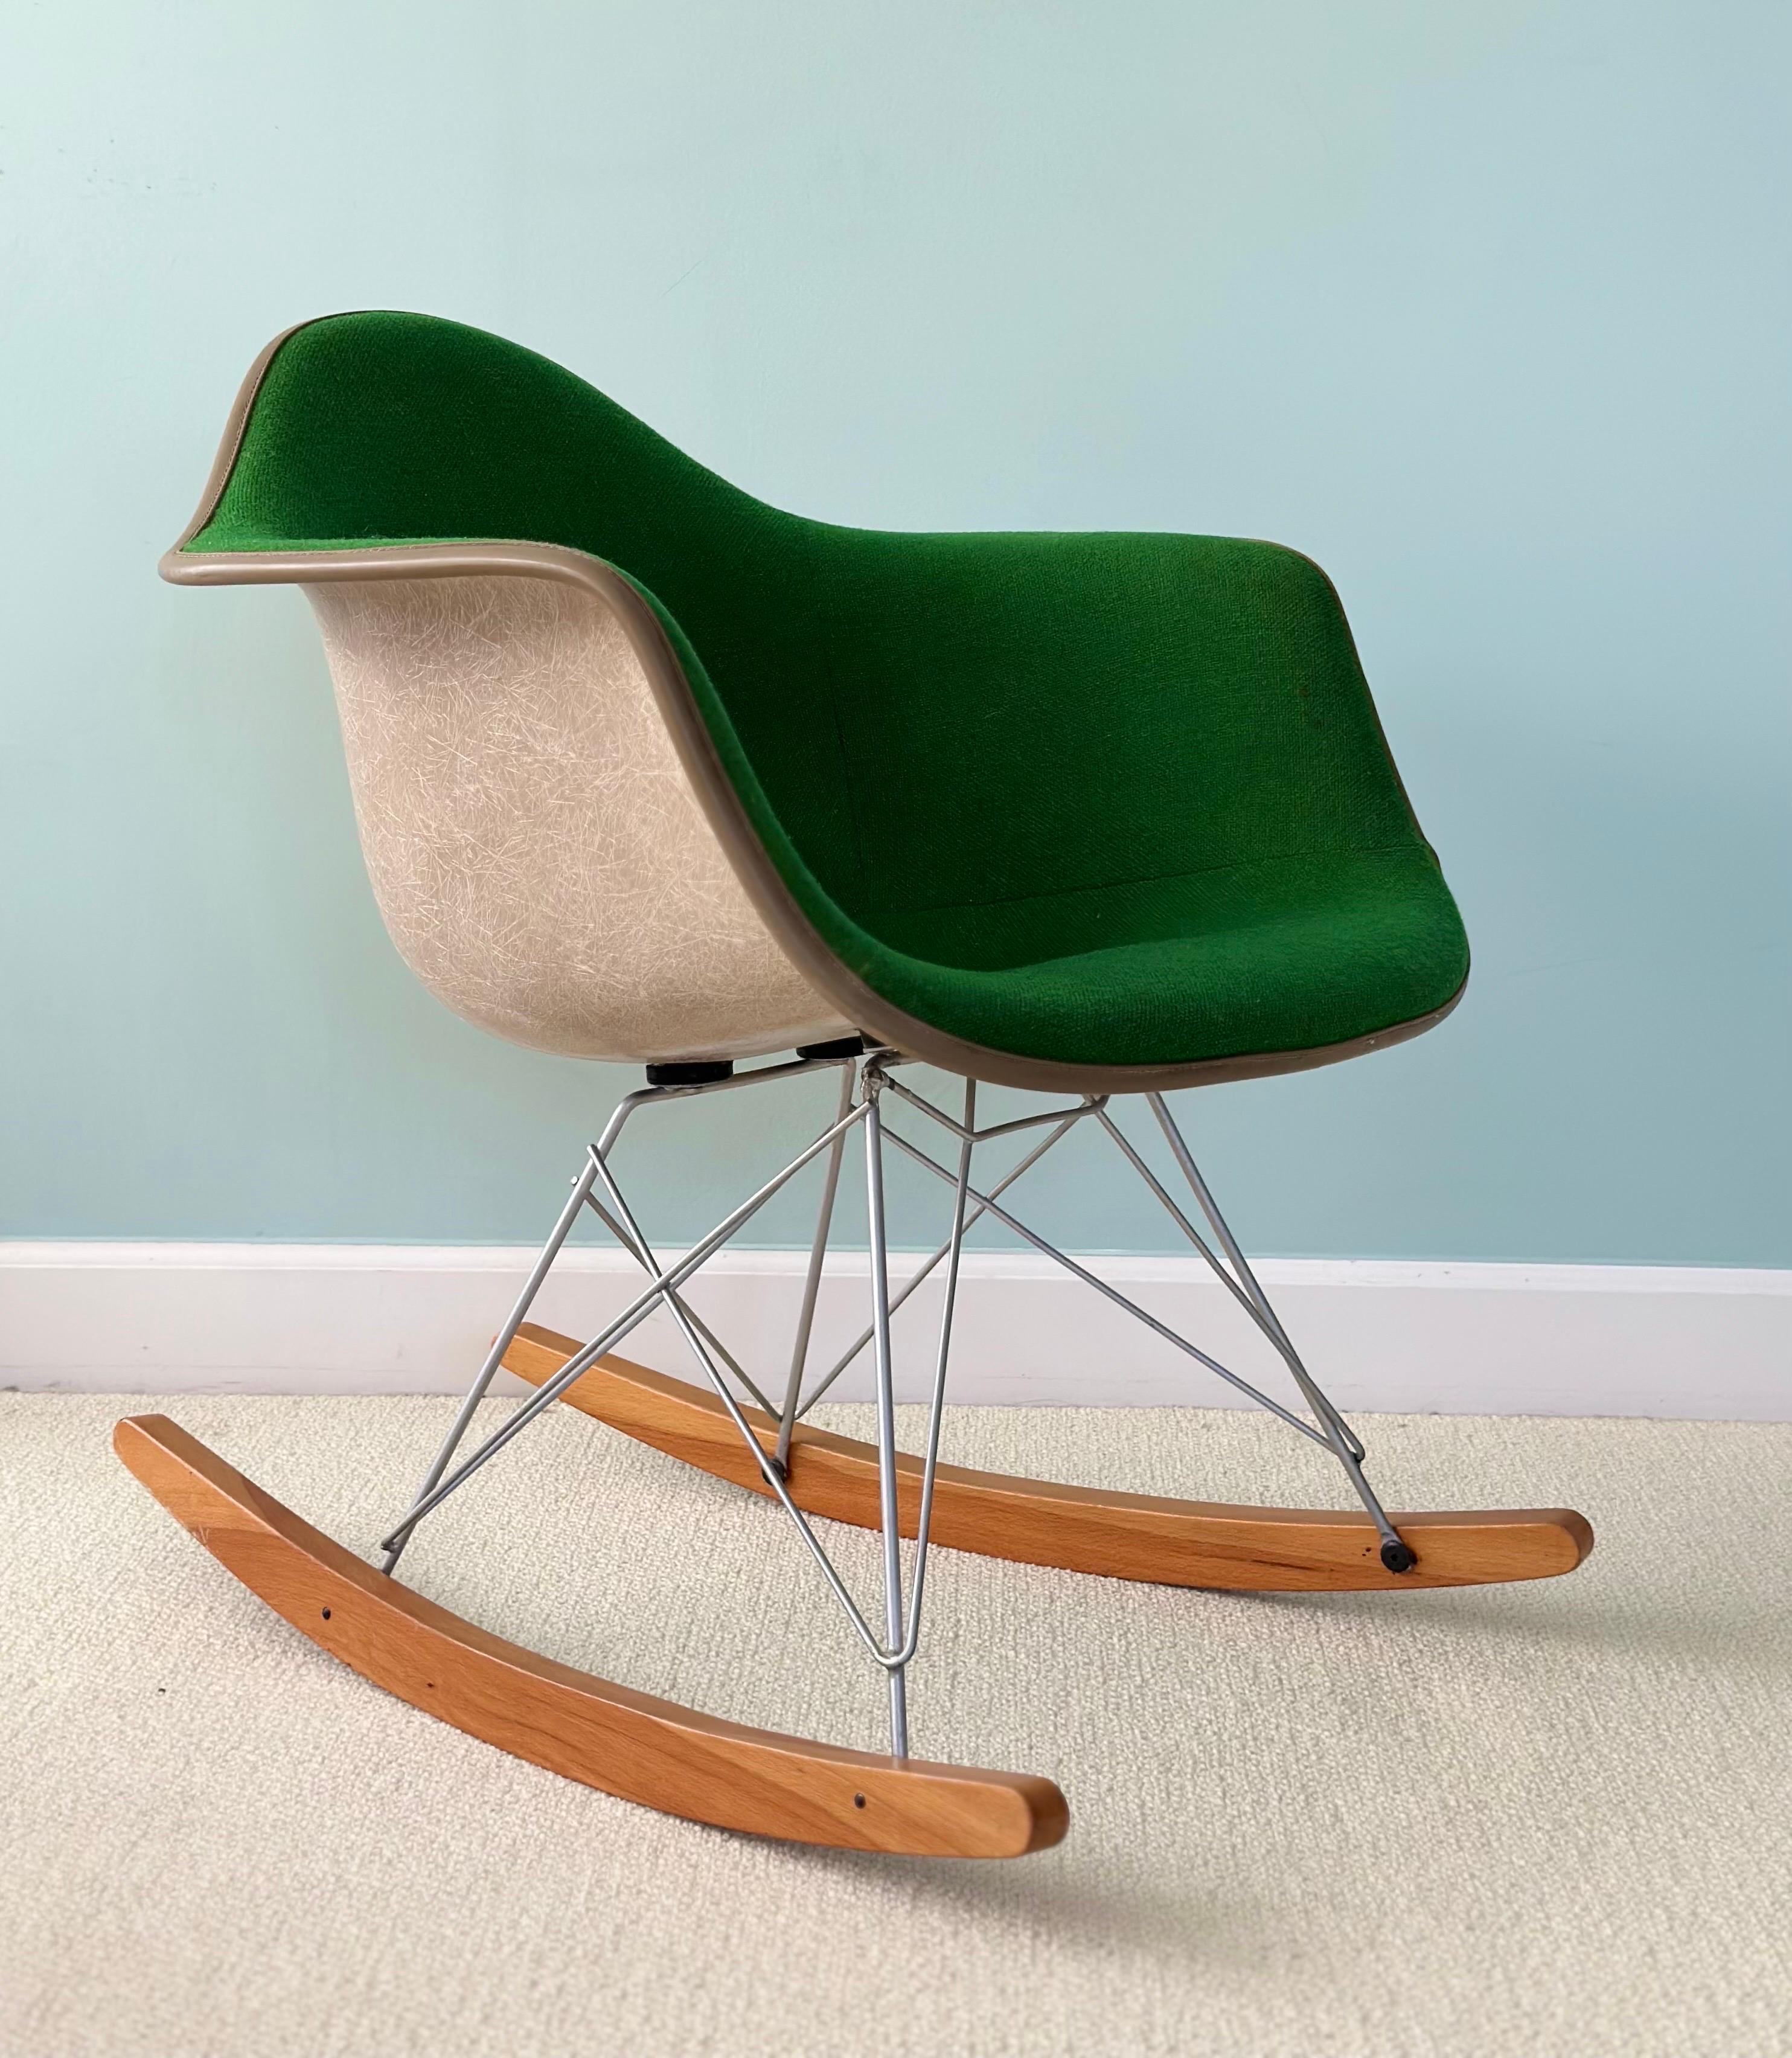 1970s RAR Eames for Herman Miller Fiberglass and Green Upholstery Rocker Chair  For Sale 4